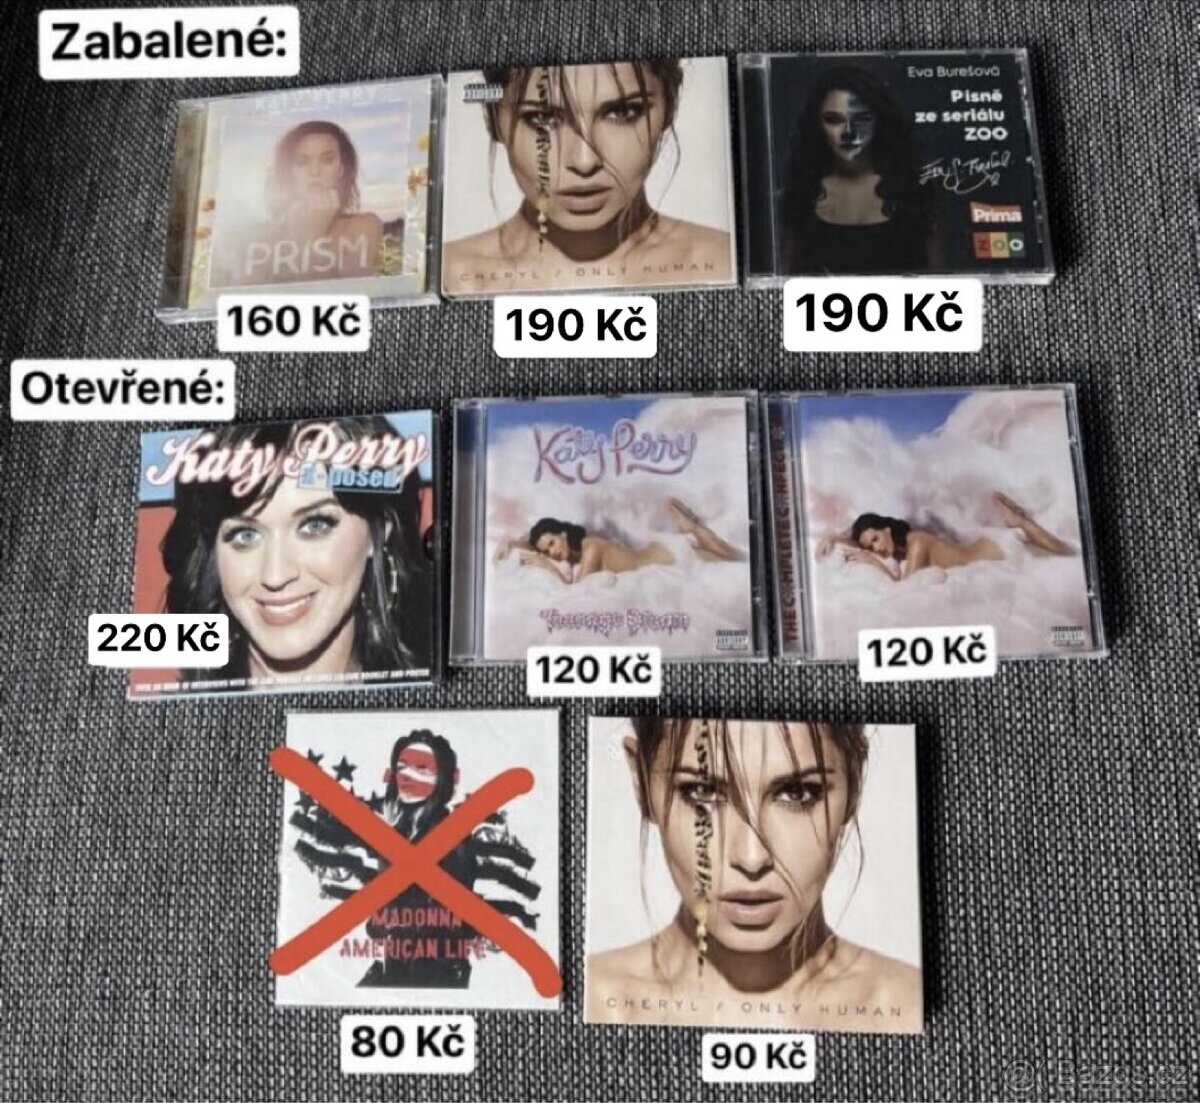 CD Katy Perry, Cheryl a Eva Burešová